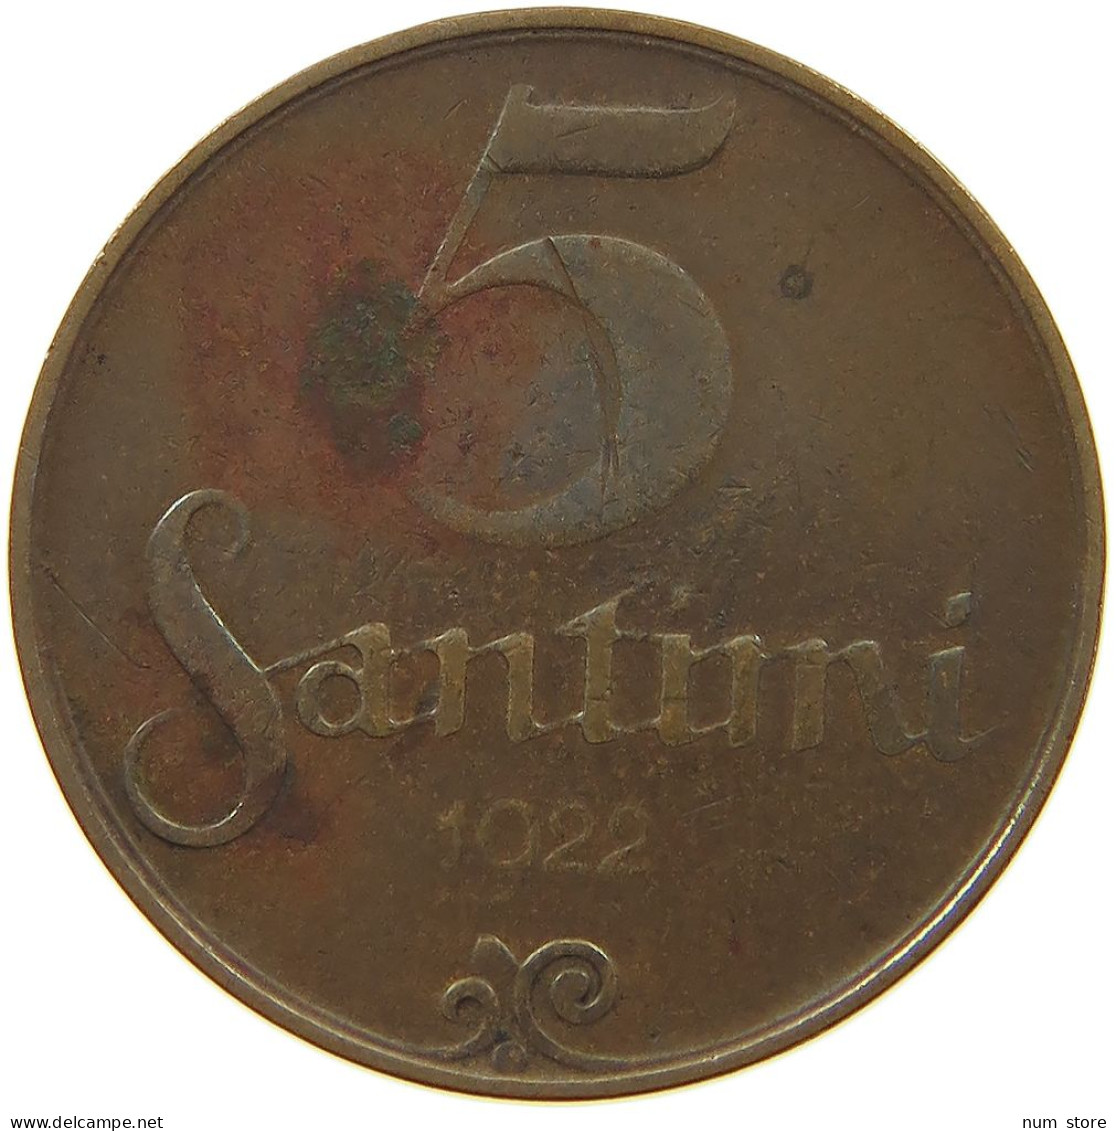 LATVIA 5 SANTIMI 1922  #c080 0683 - Latvia